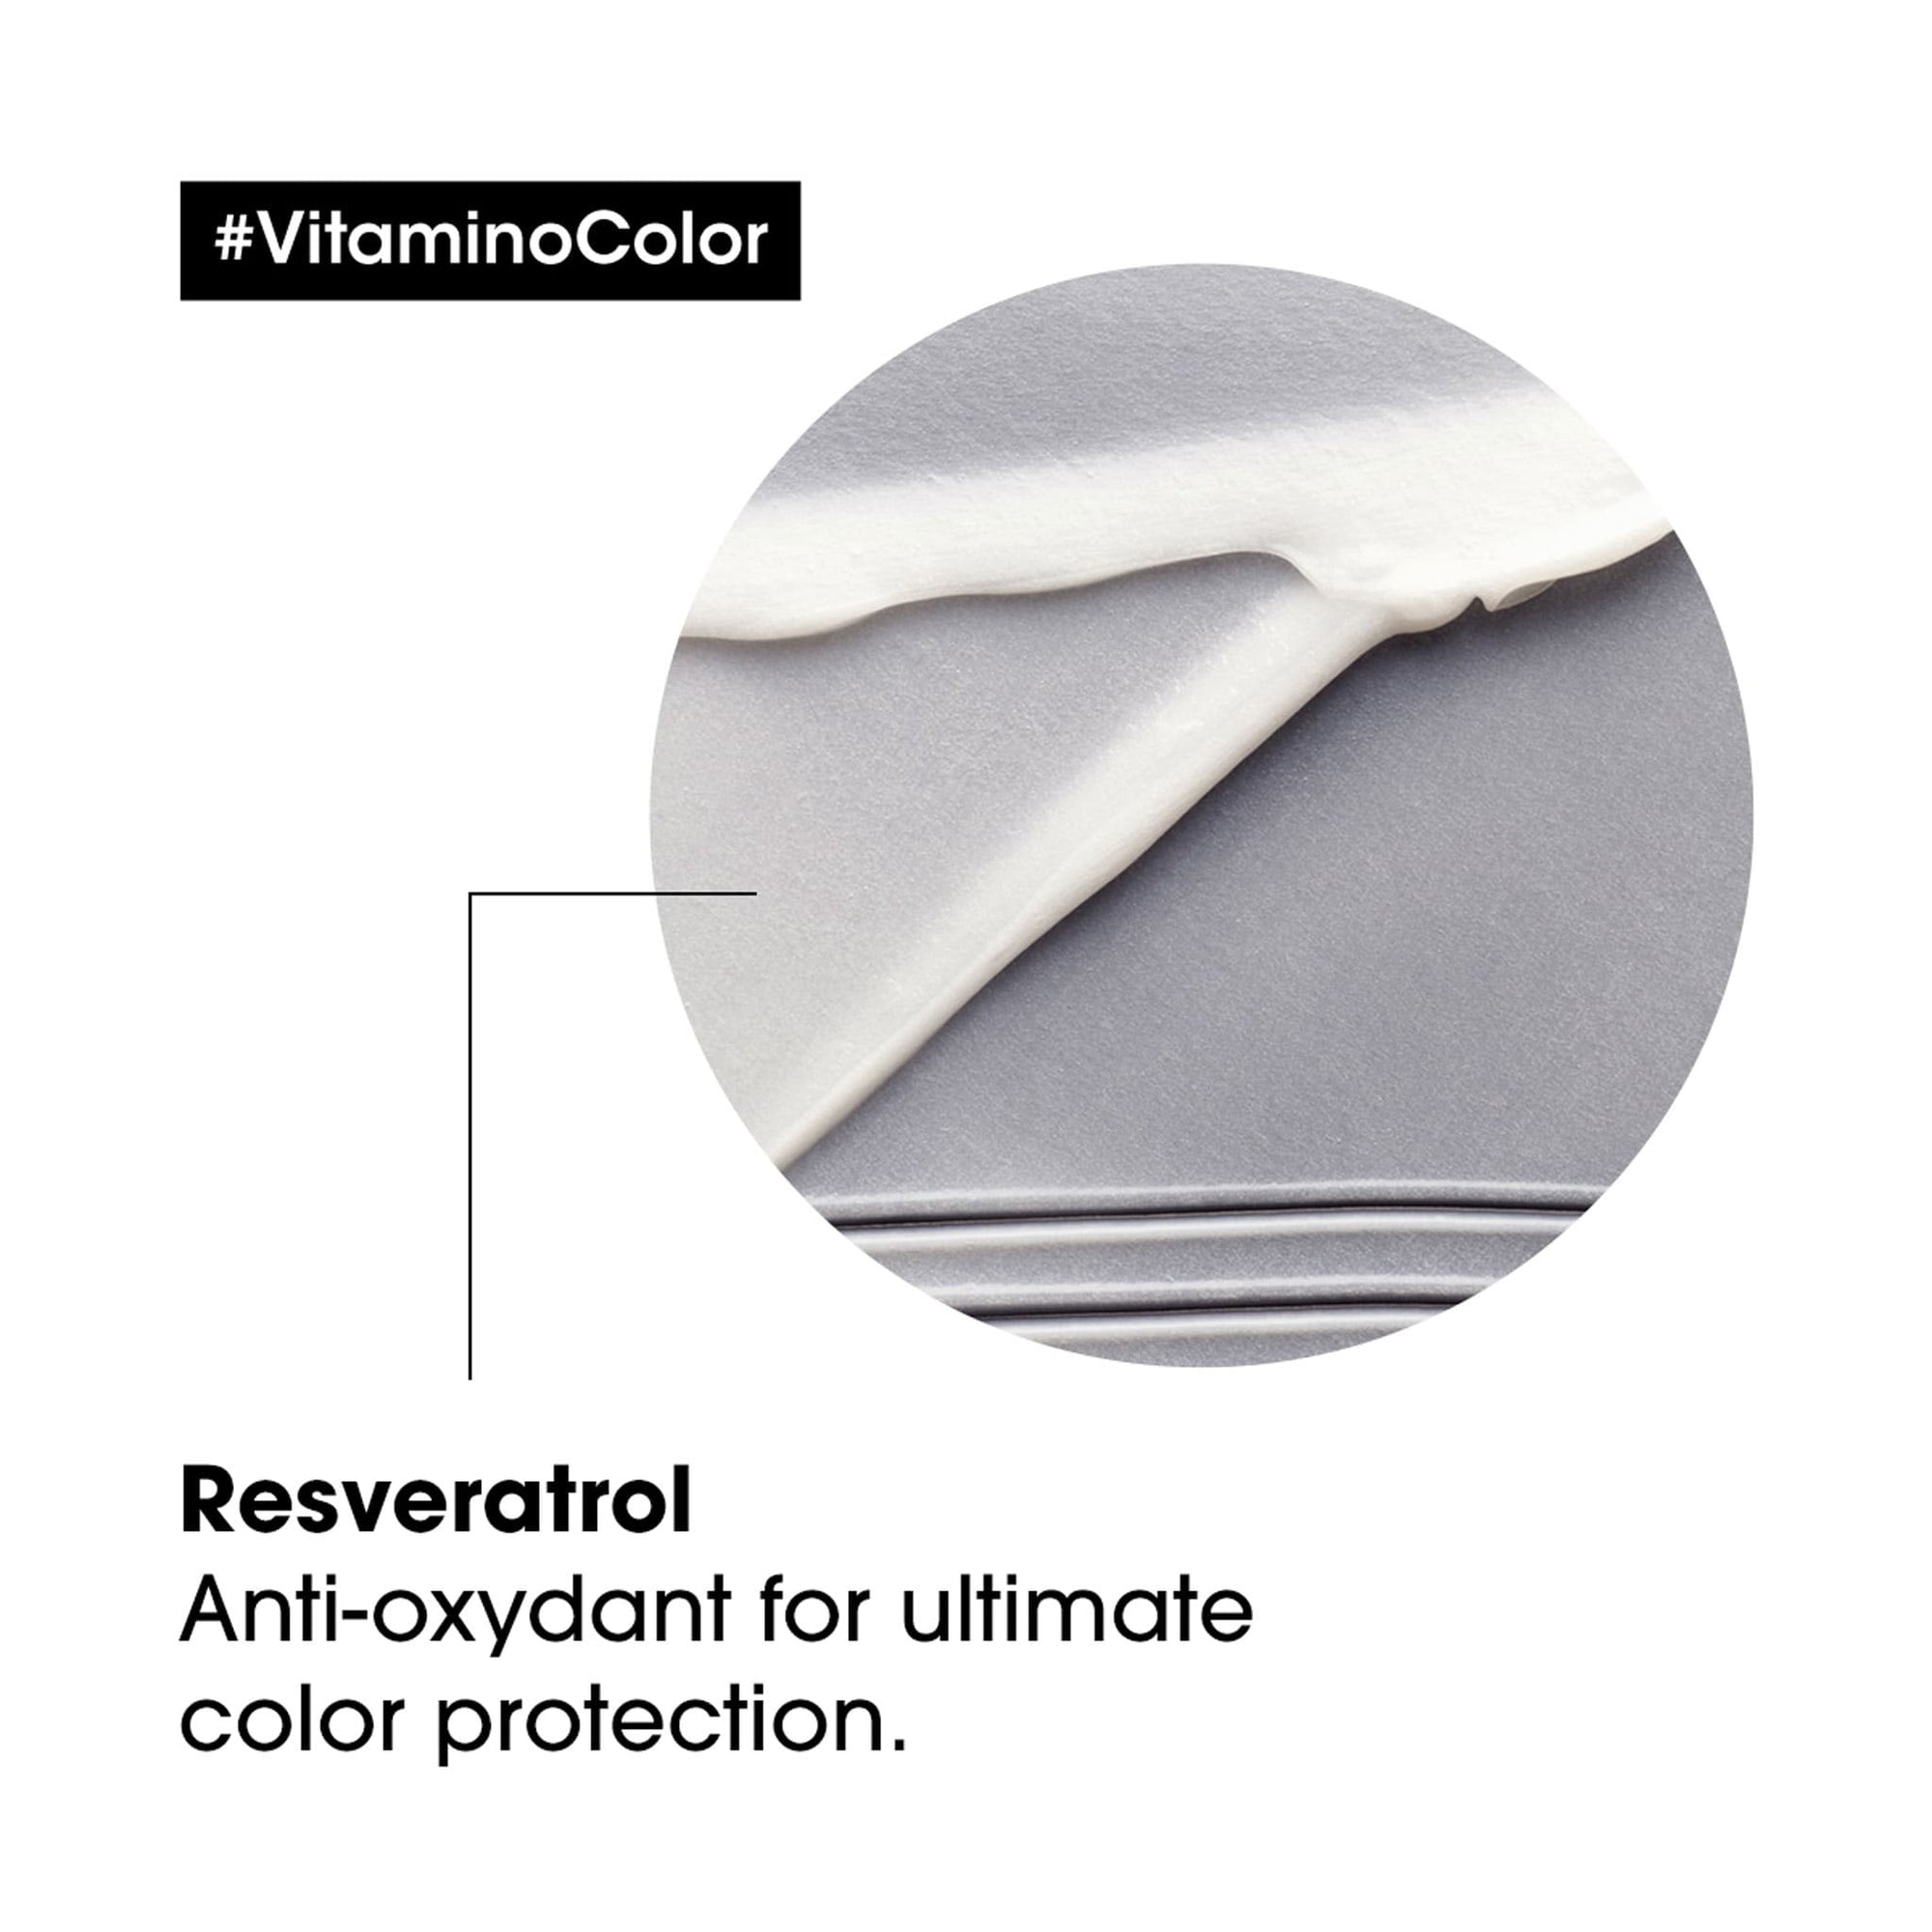 L'Oreal Vitamino Color Conditioner 200ml